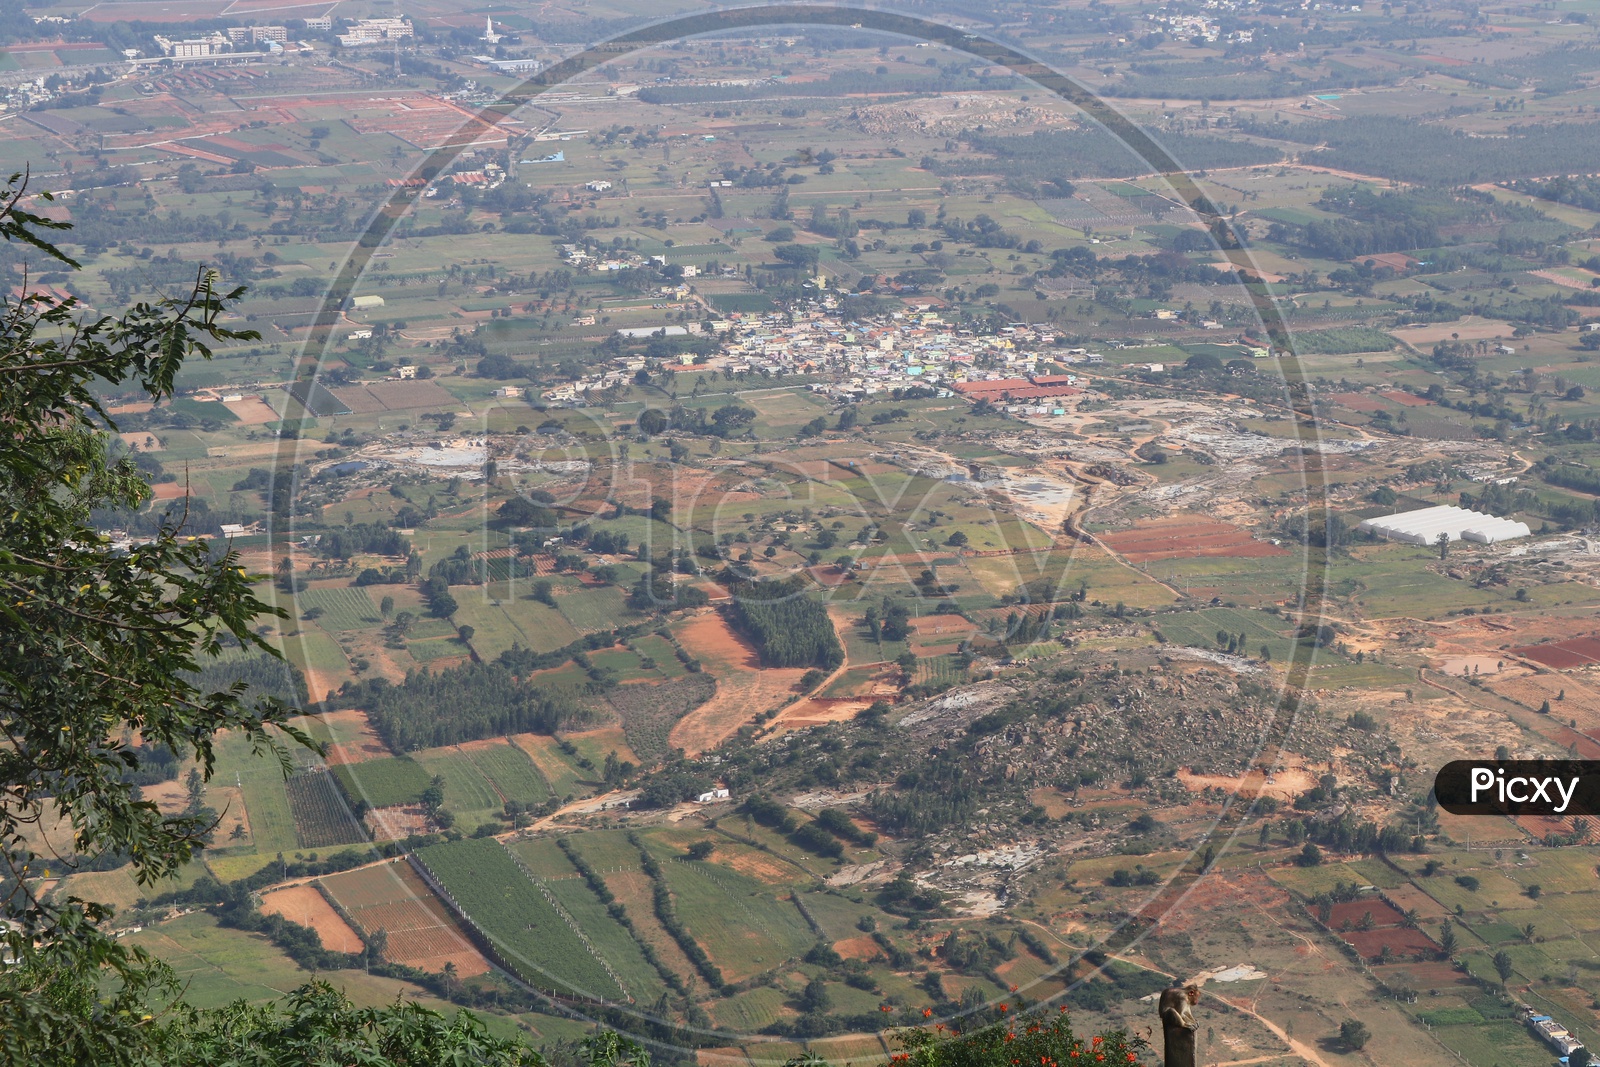 View of the terrain around Nandi hills